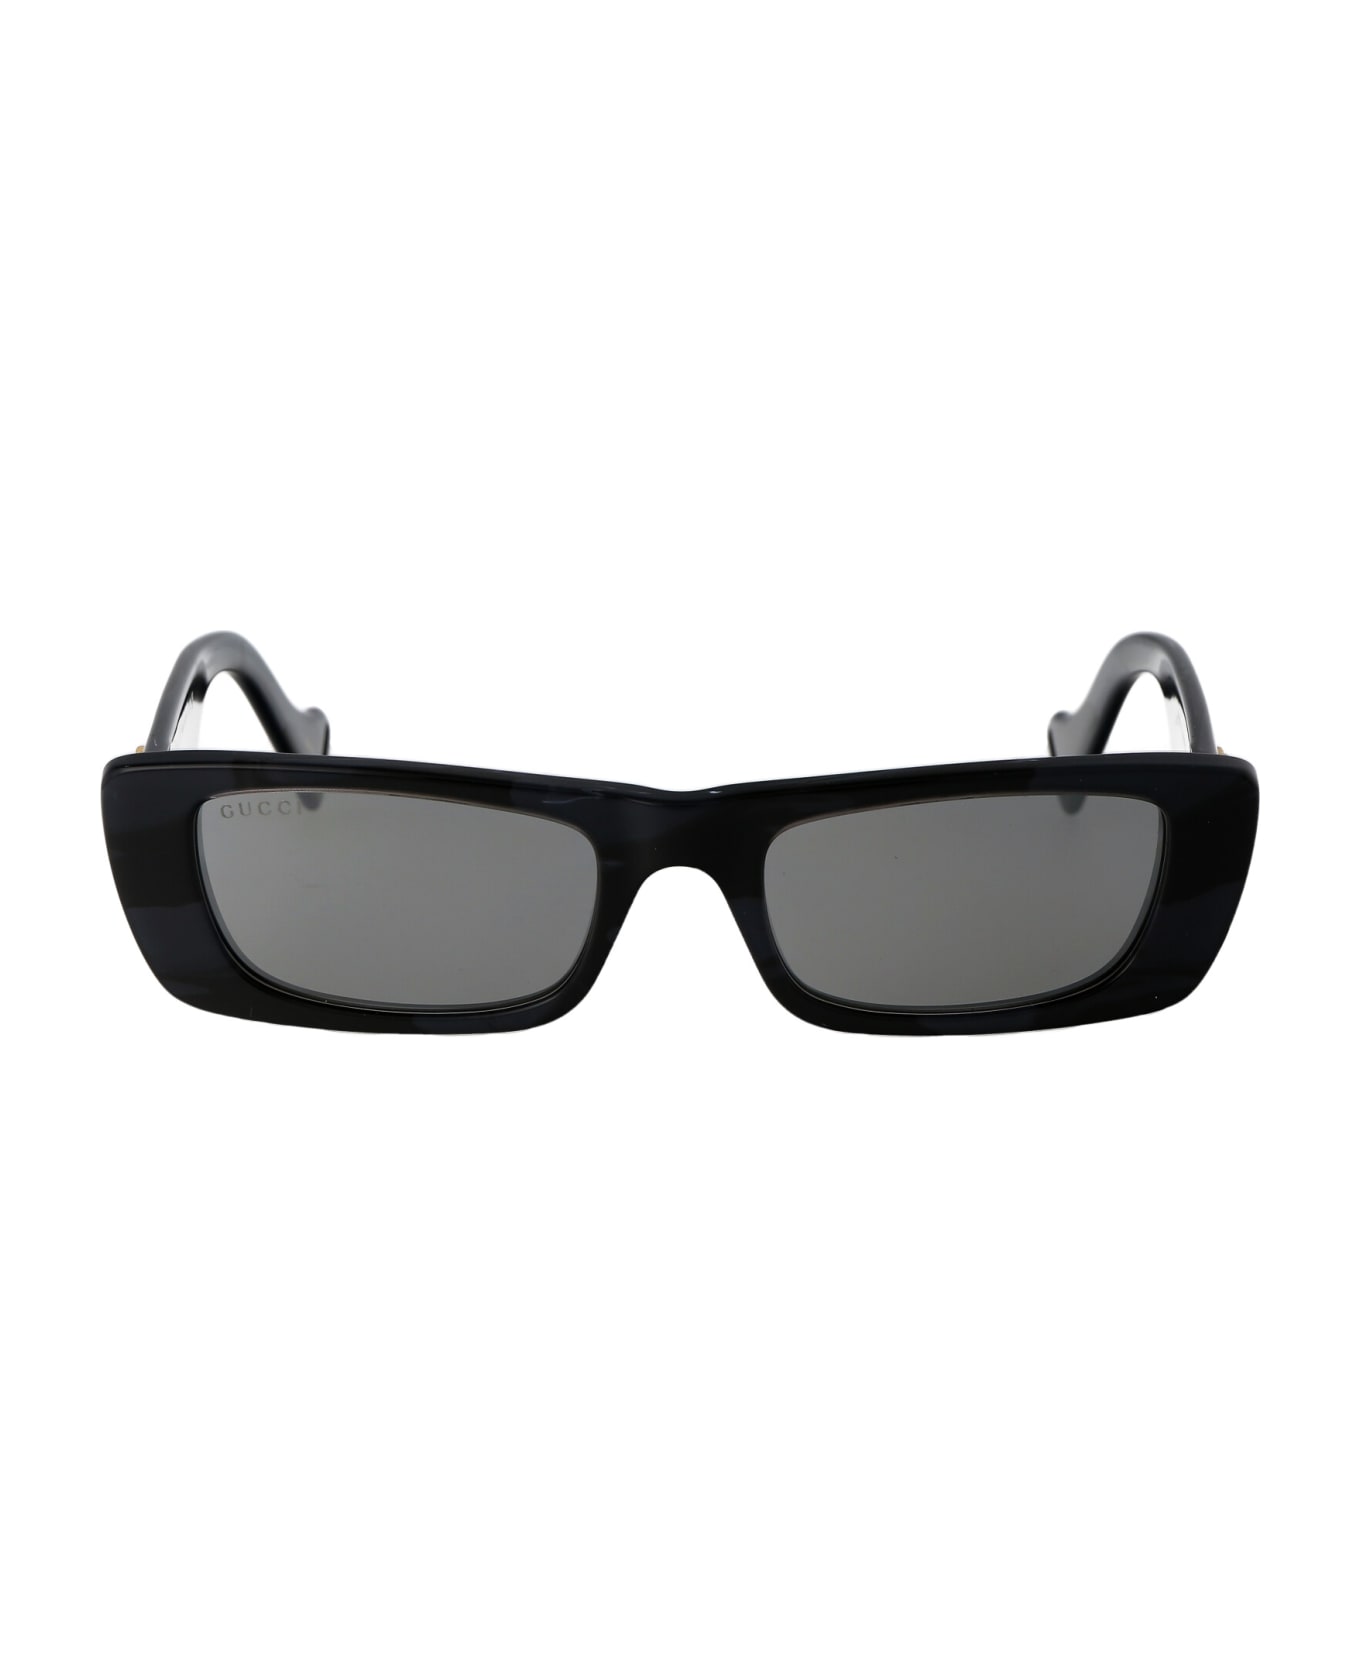 Gucci Eyewear Gg0516s Sunglasses - 013 GREY GREY SILVER